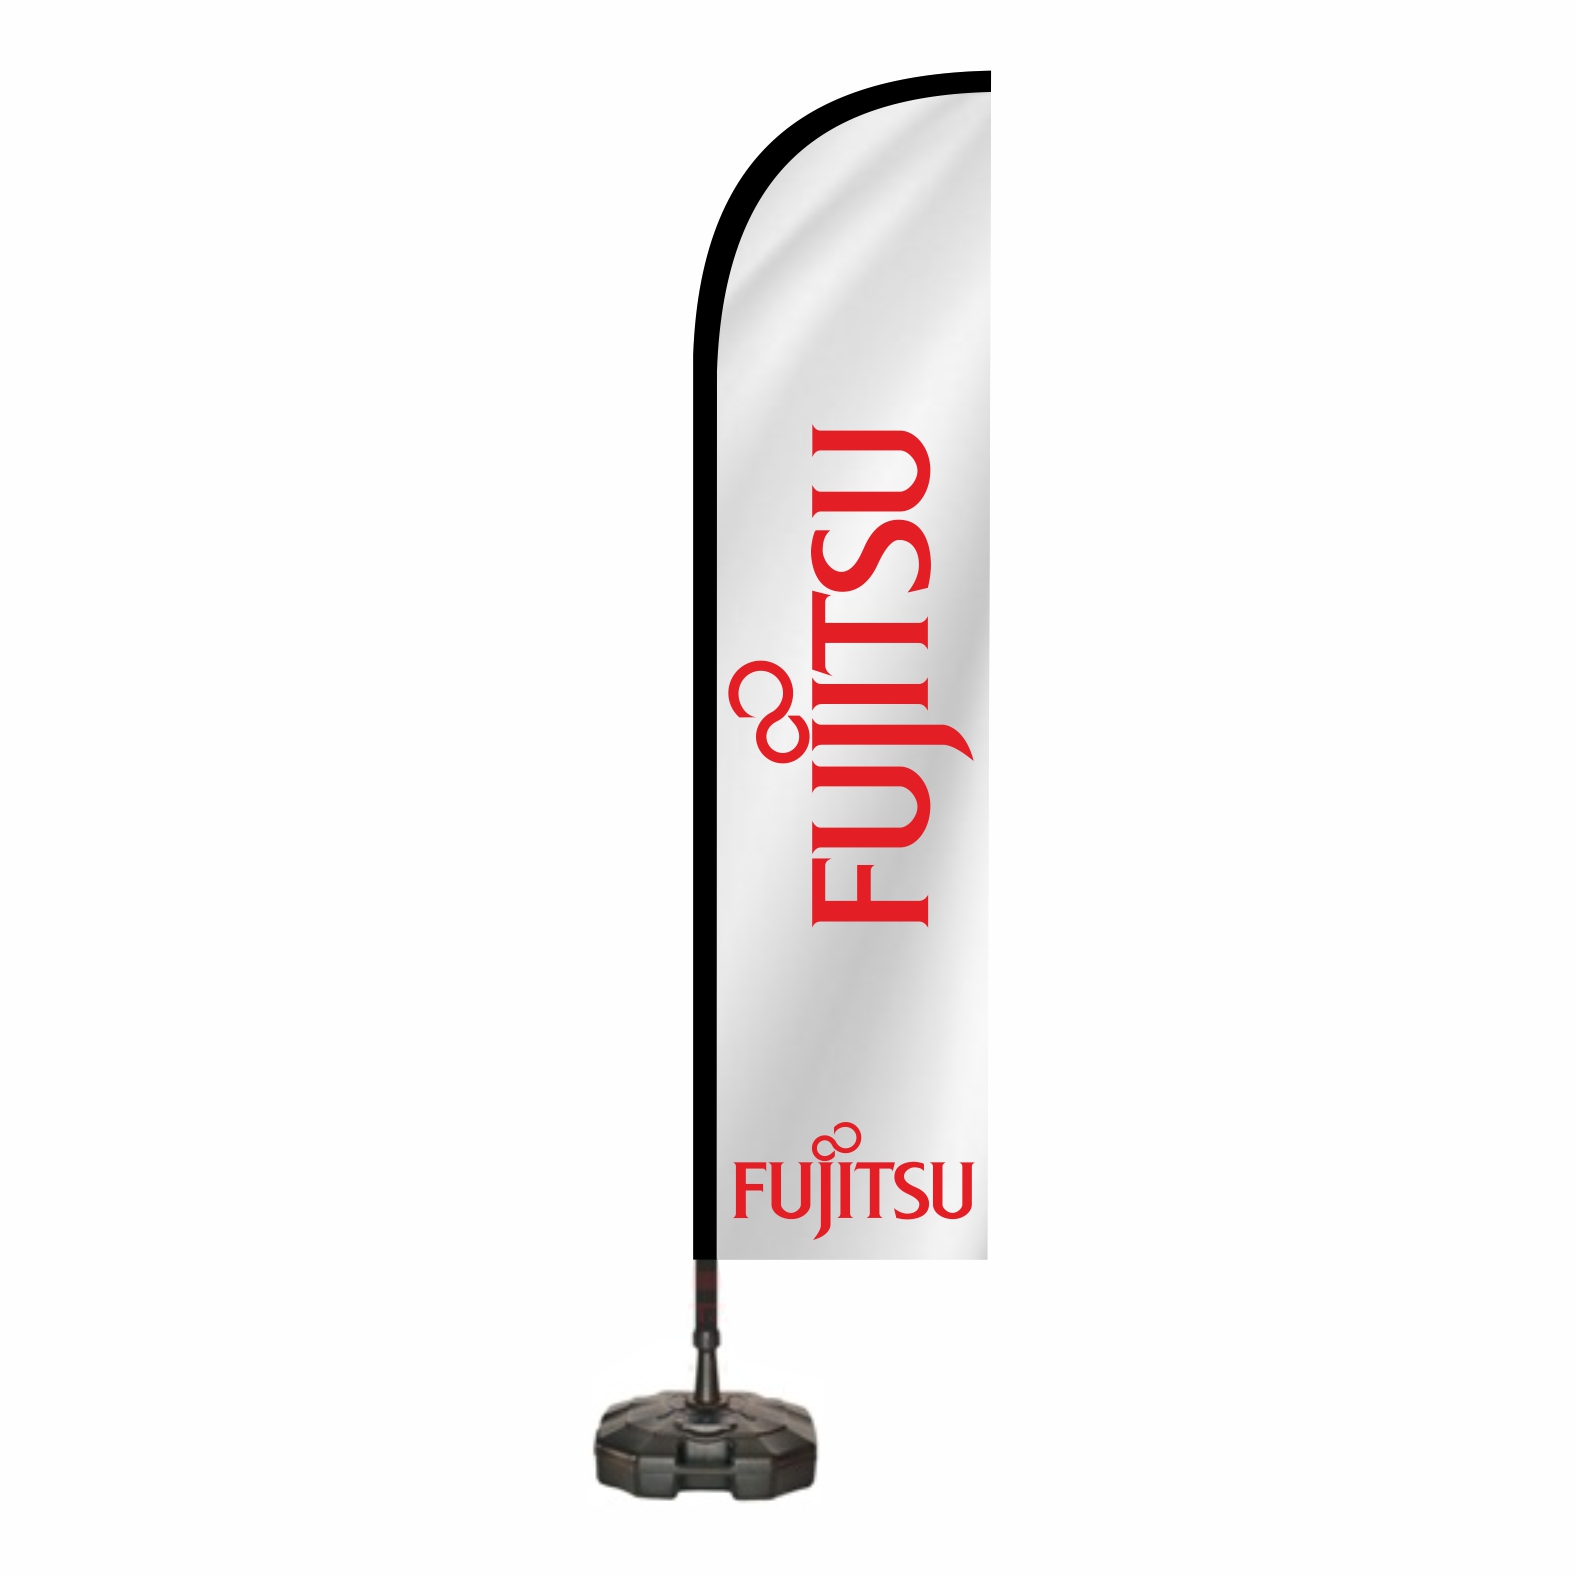 Fujitsu Oltal Bayra Fiyat